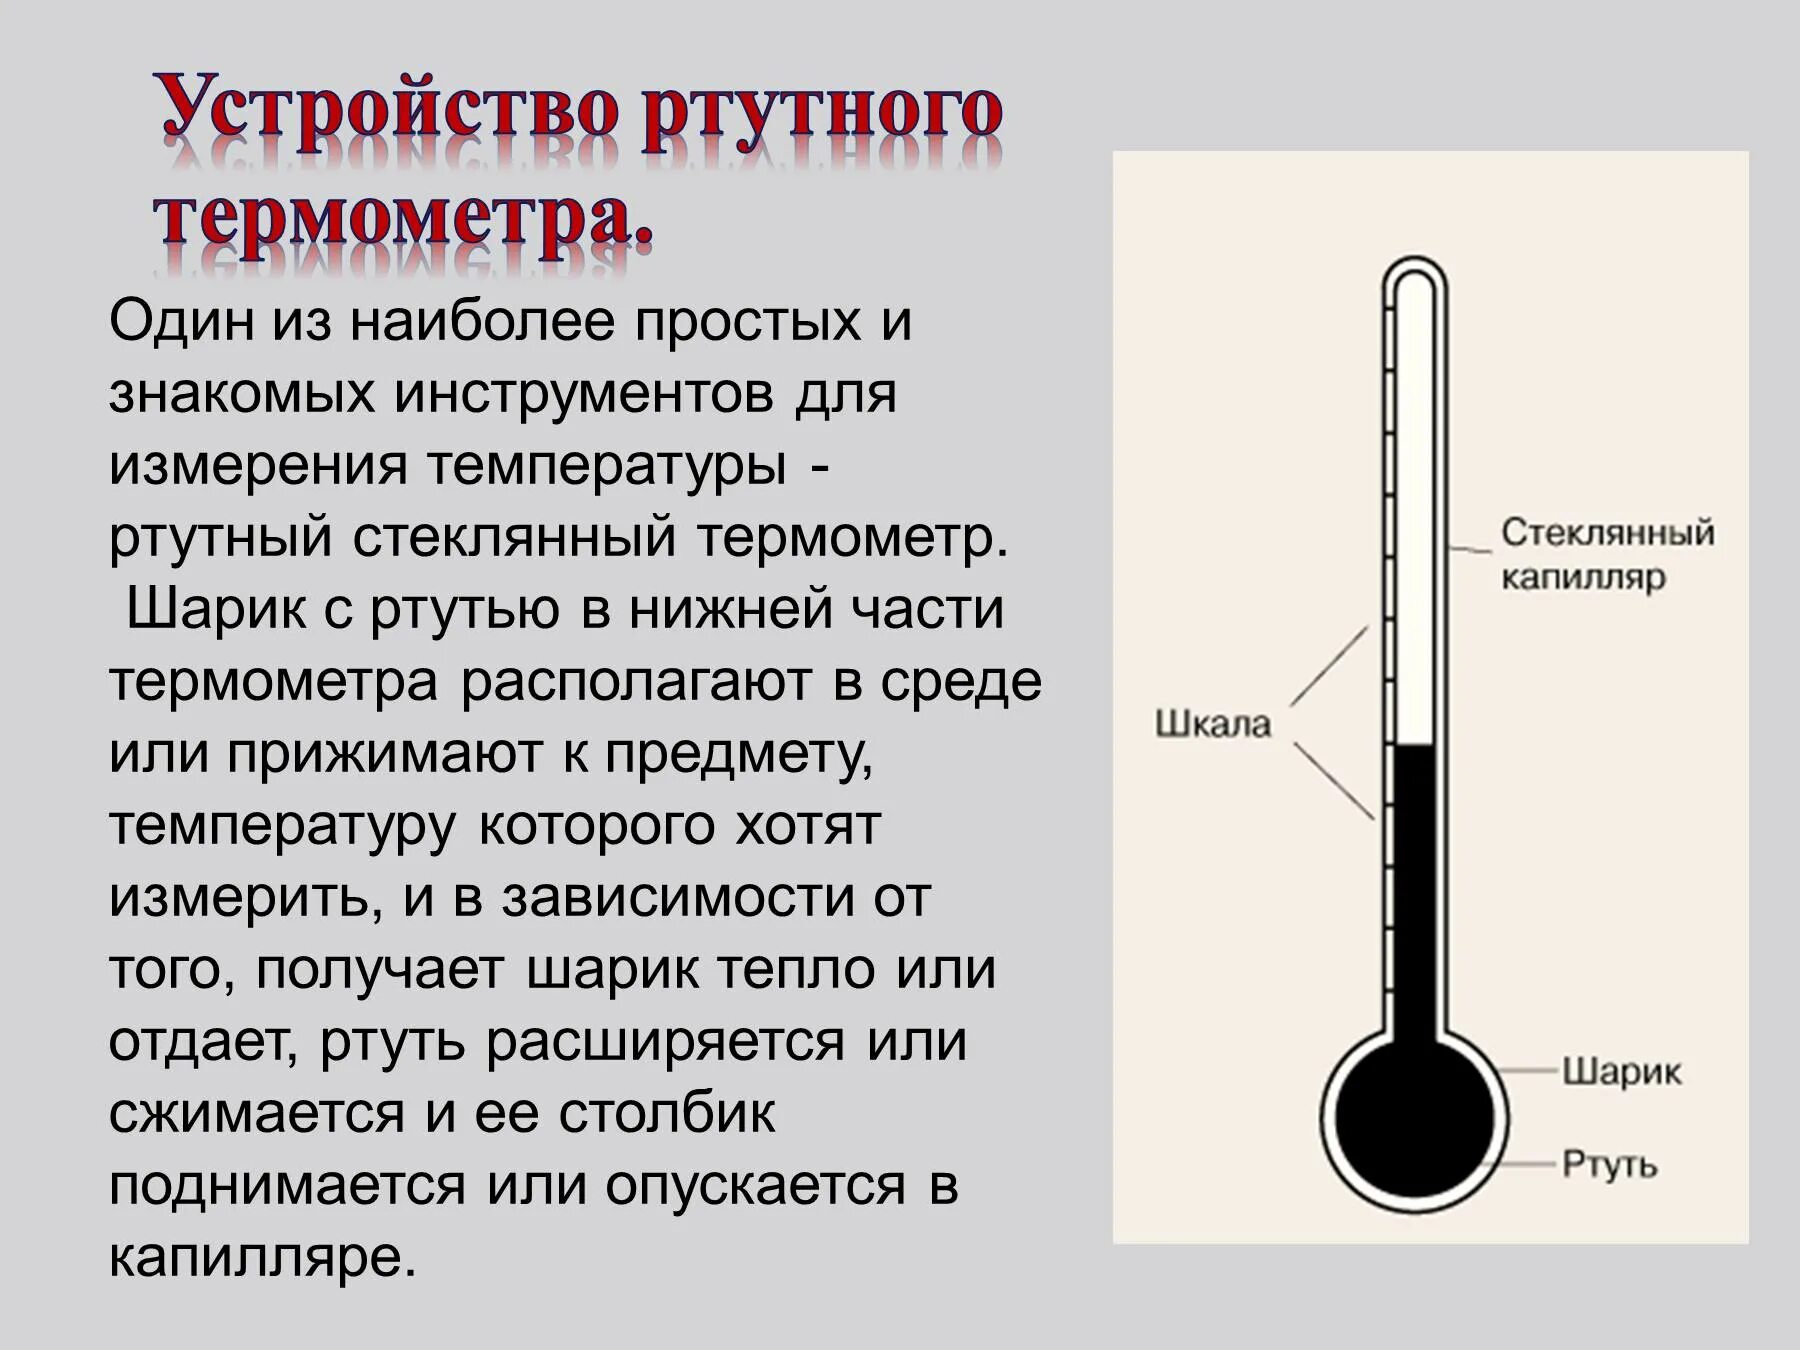 Состав градусника. Как устроен ртутный градусник схема. Как устроен ртутный градусник для измерения температуры тела. Как устроен ртутный термометр. Как устроен градусник ртутный для измерения температуры.